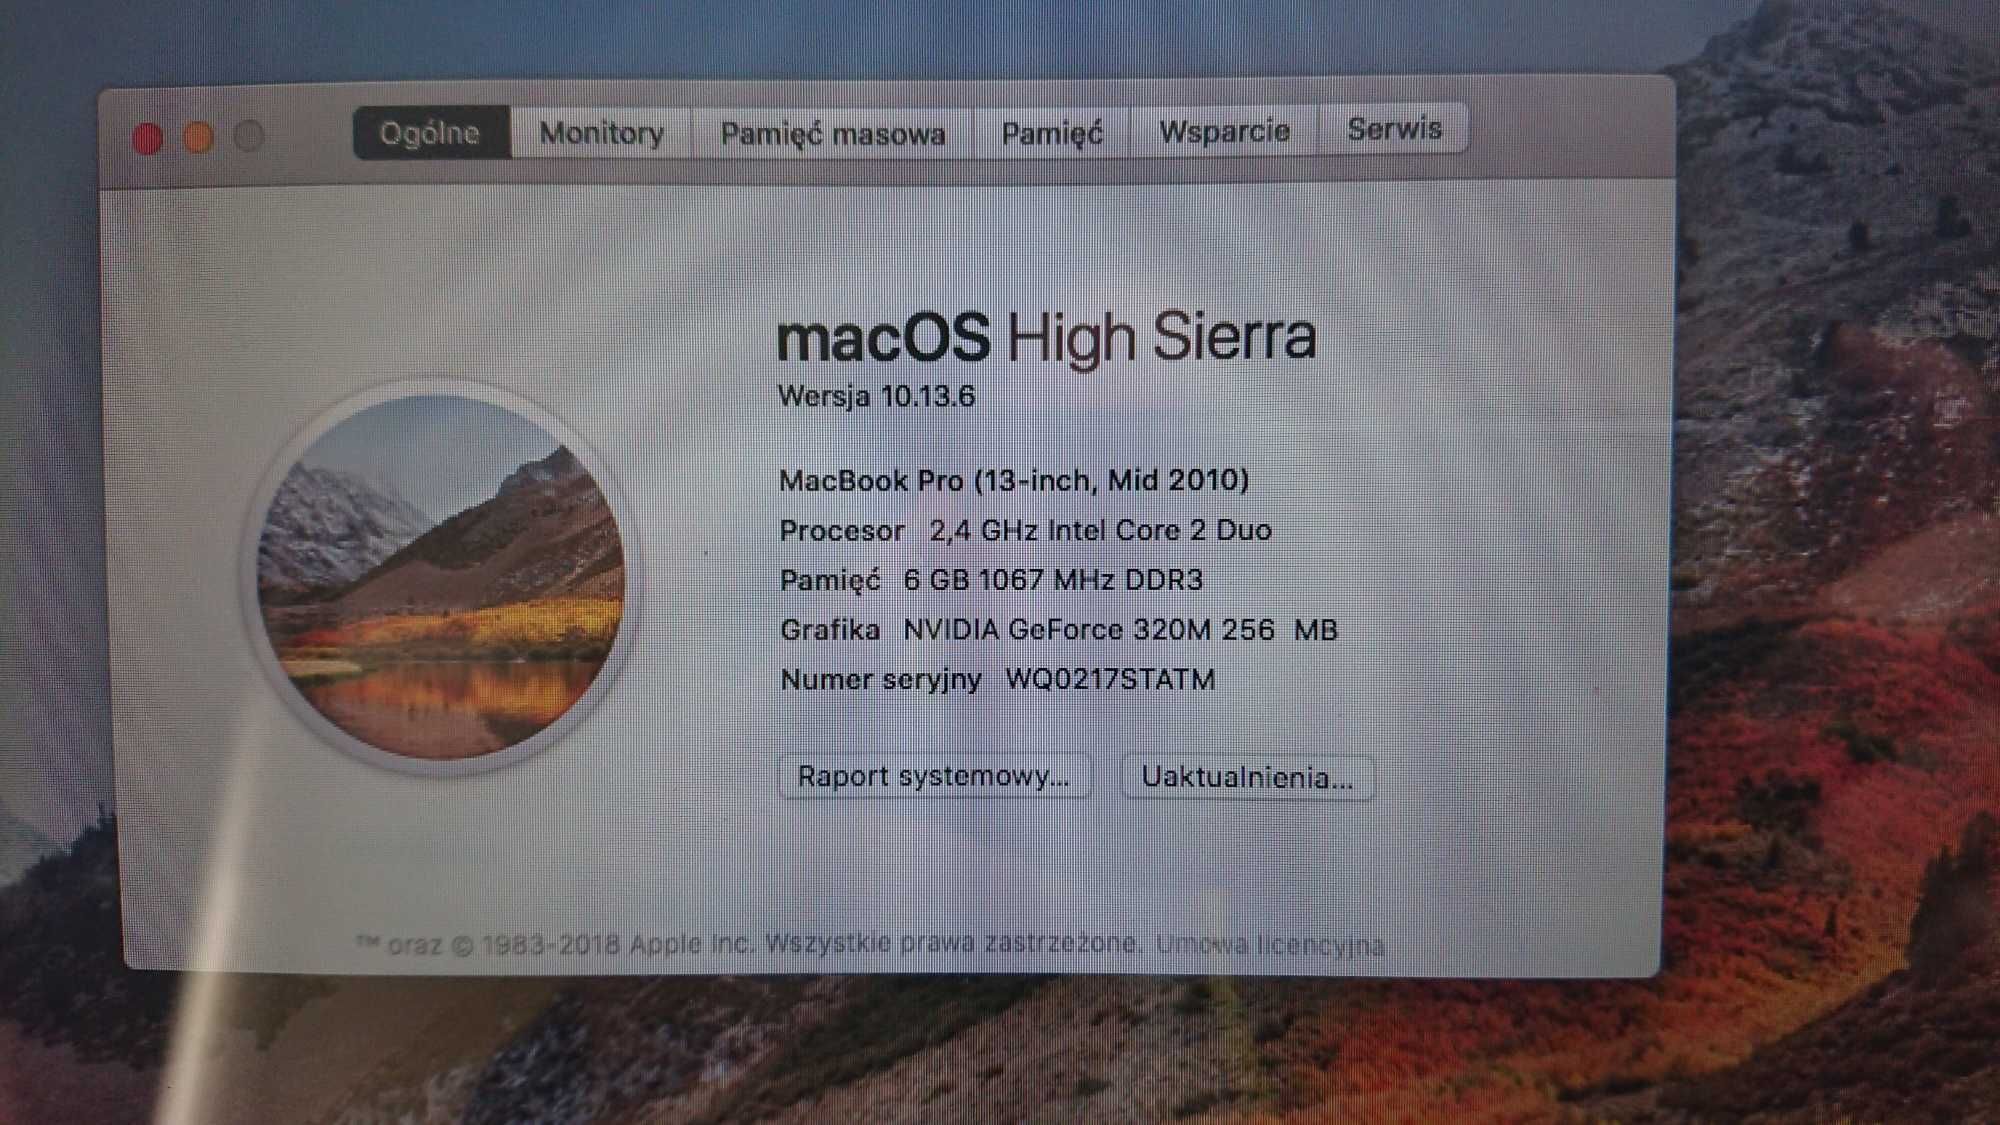 MacBook Pro A1278 6GB 1 TB 2010 High Sierra Rzeszów